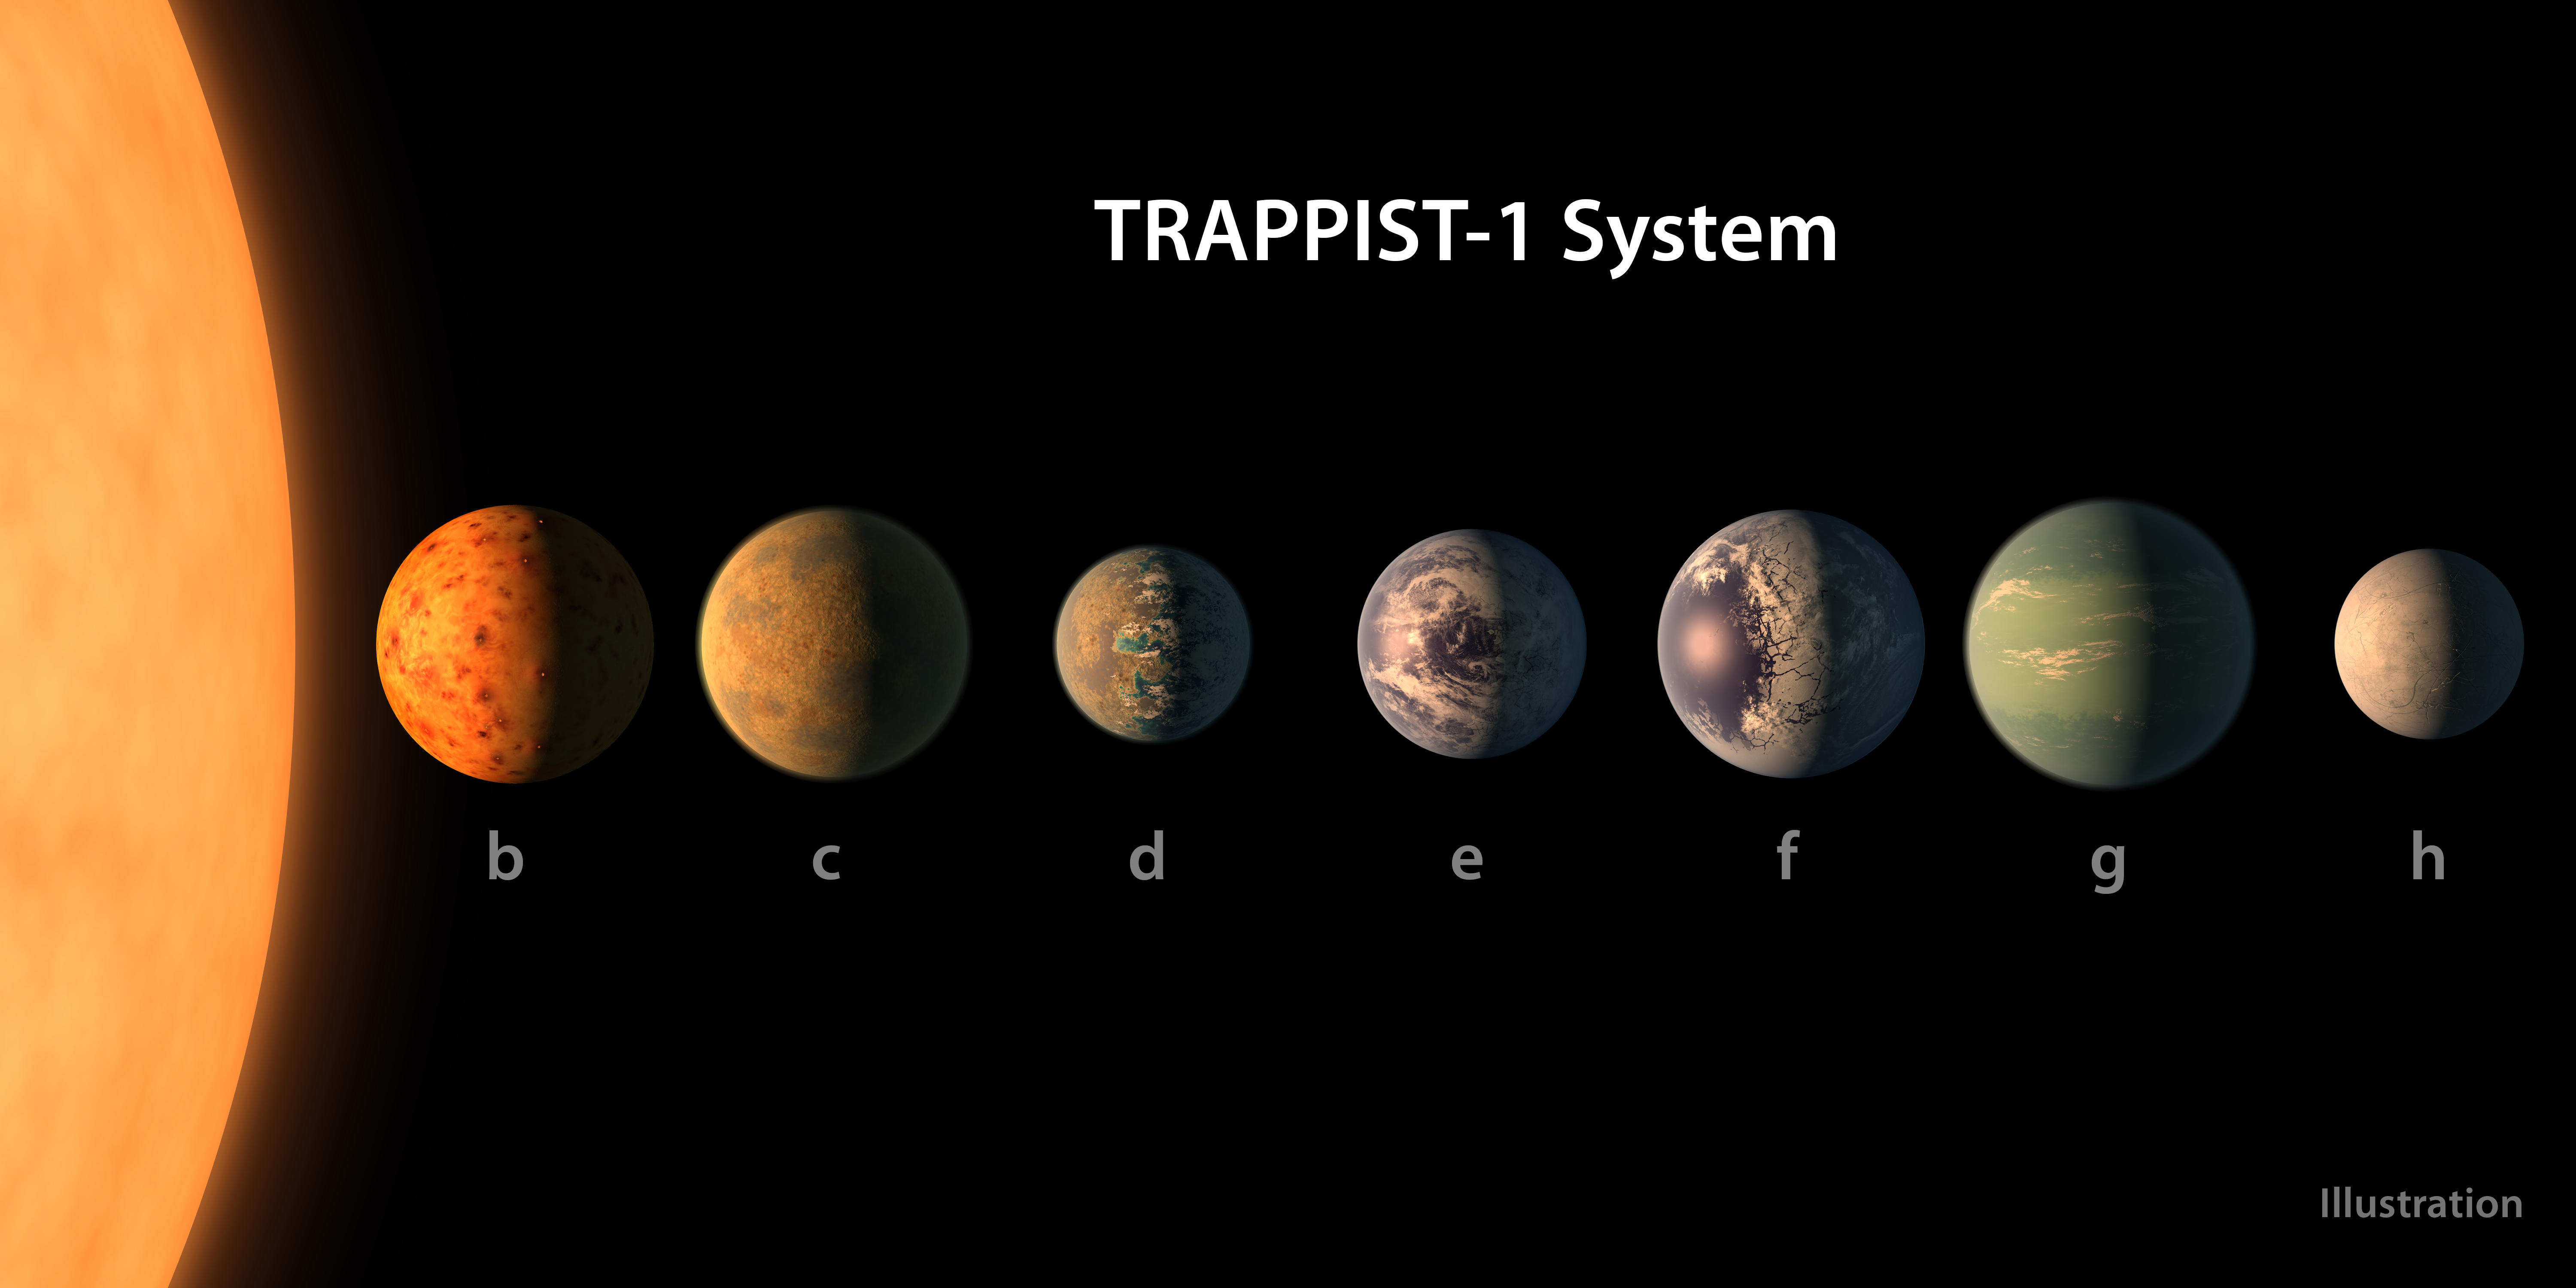 Concepção artísticas do septeto planetário de TRAPPIST-1: três dos mundos estão na zona habitável e todos podem contem água em abundância (Foto: NASA/JPL-Caltech)